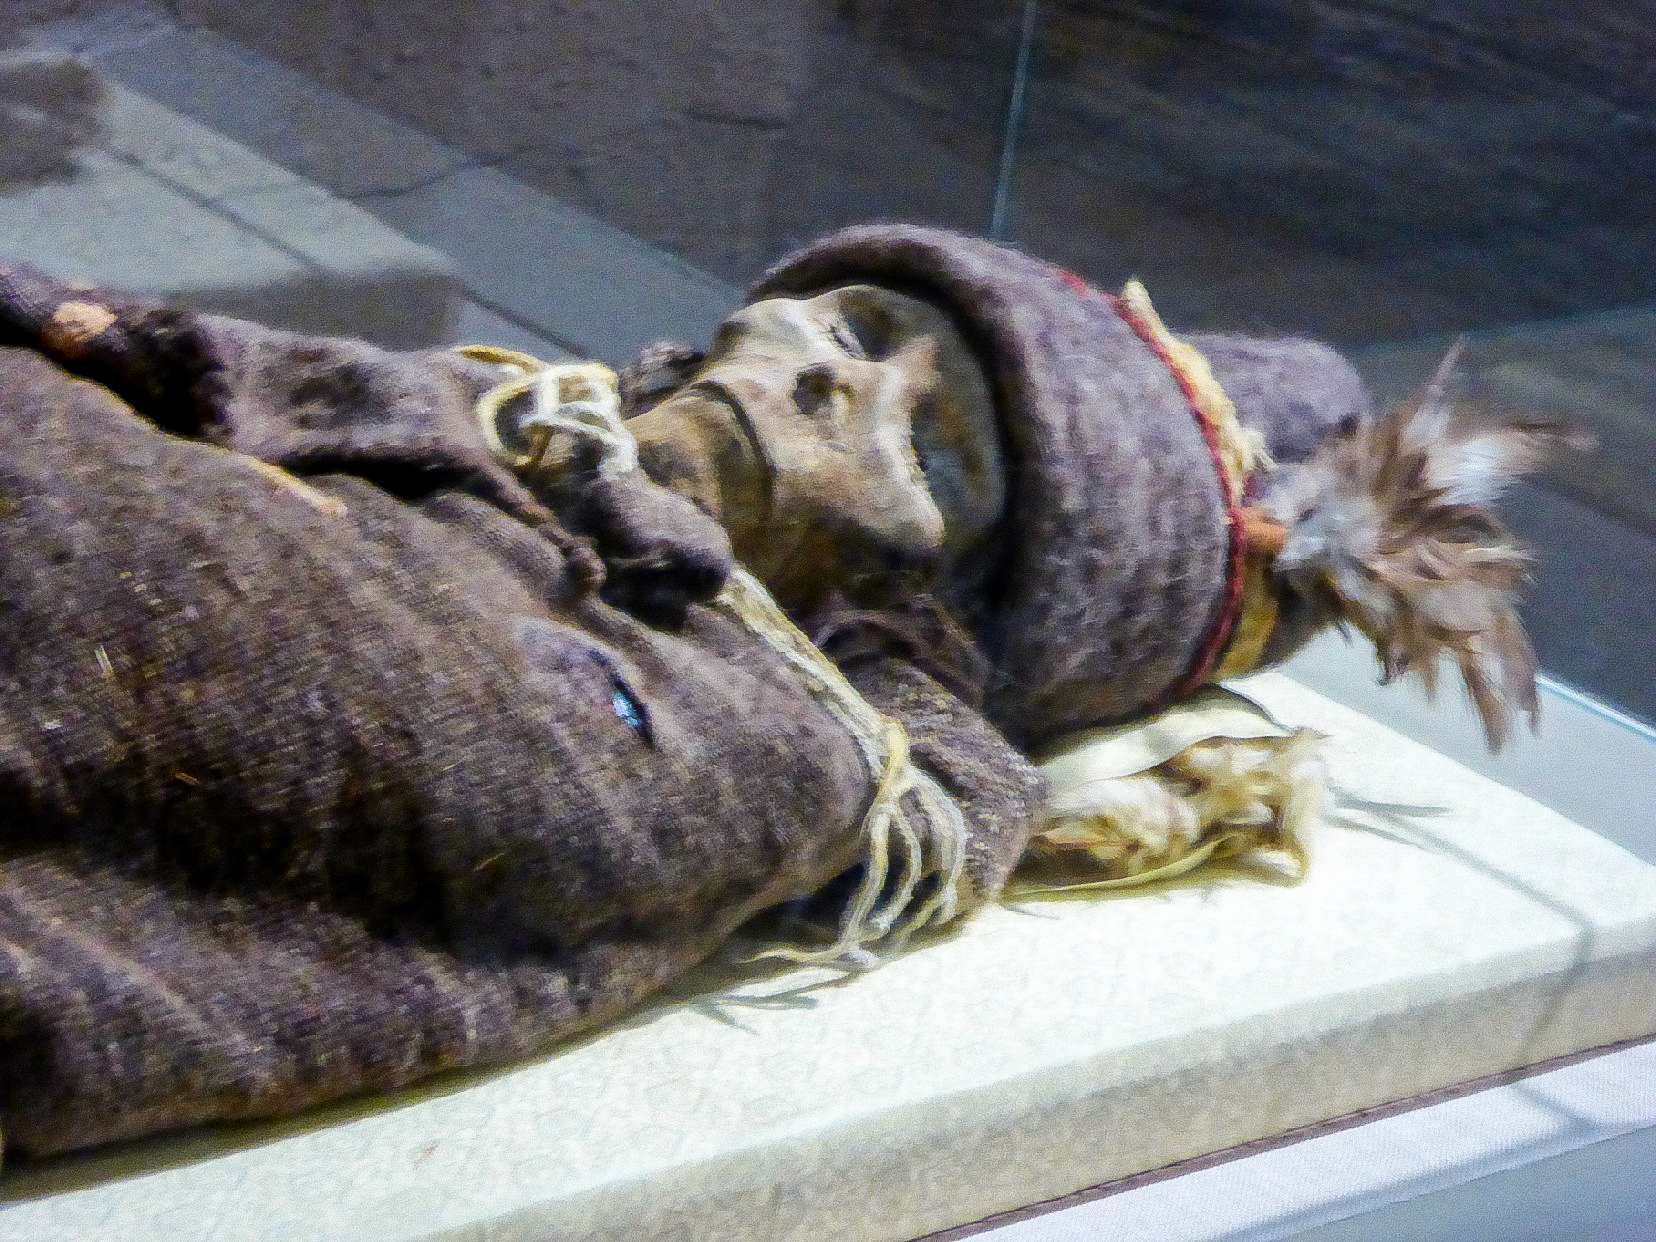 Die "Xiaohe Mummy", wat in Xinjiang Museum uitgestal word, is een van die oudste Tarim-mummies, wat meer as 3800 jaar gelede dateer.